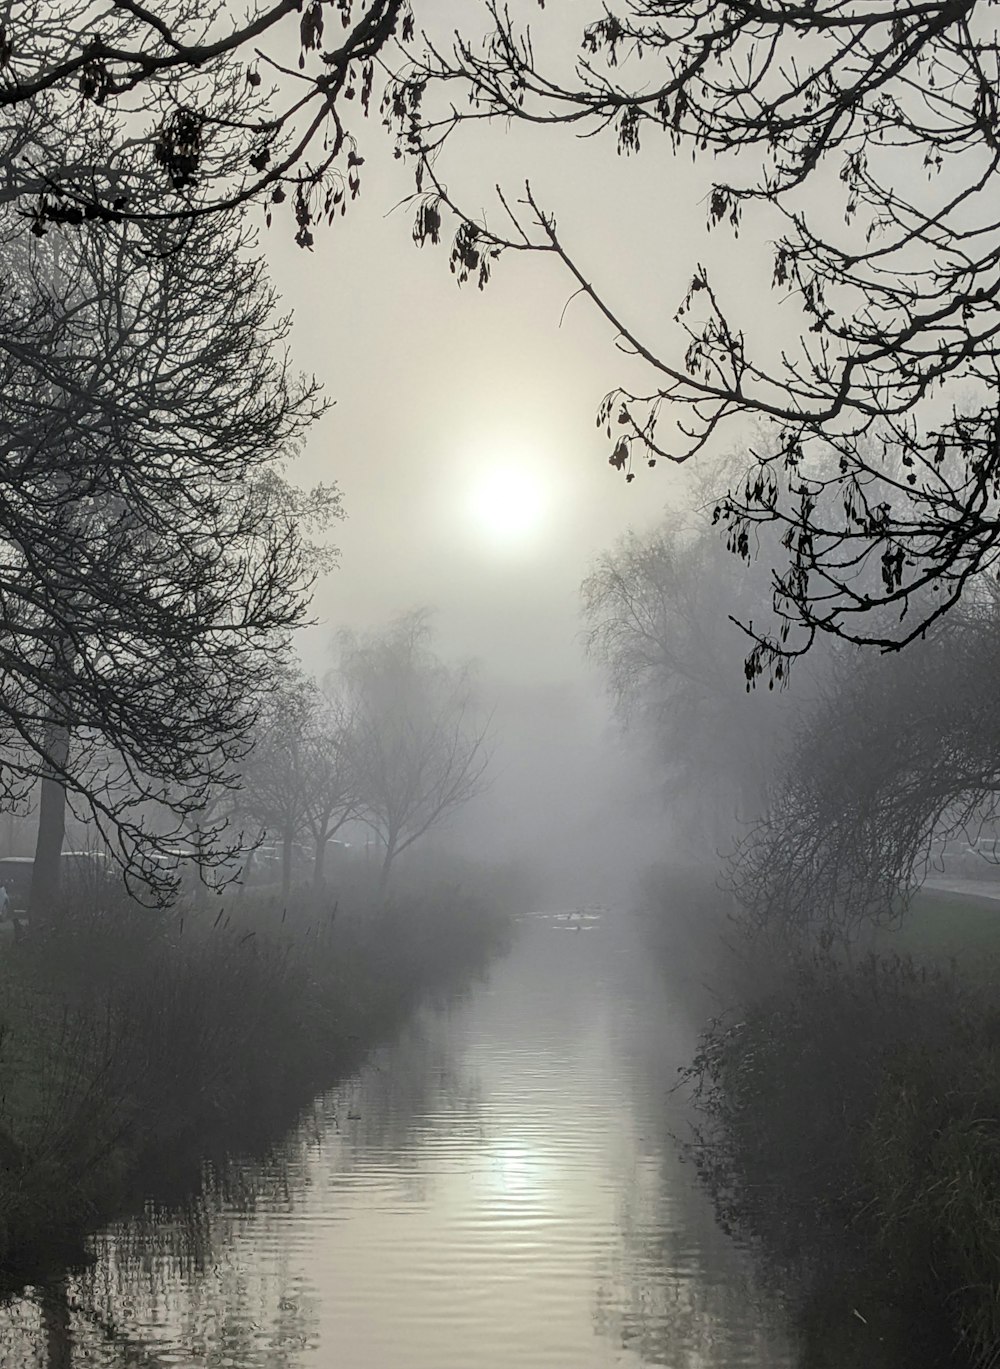 a foggy river runs through a park